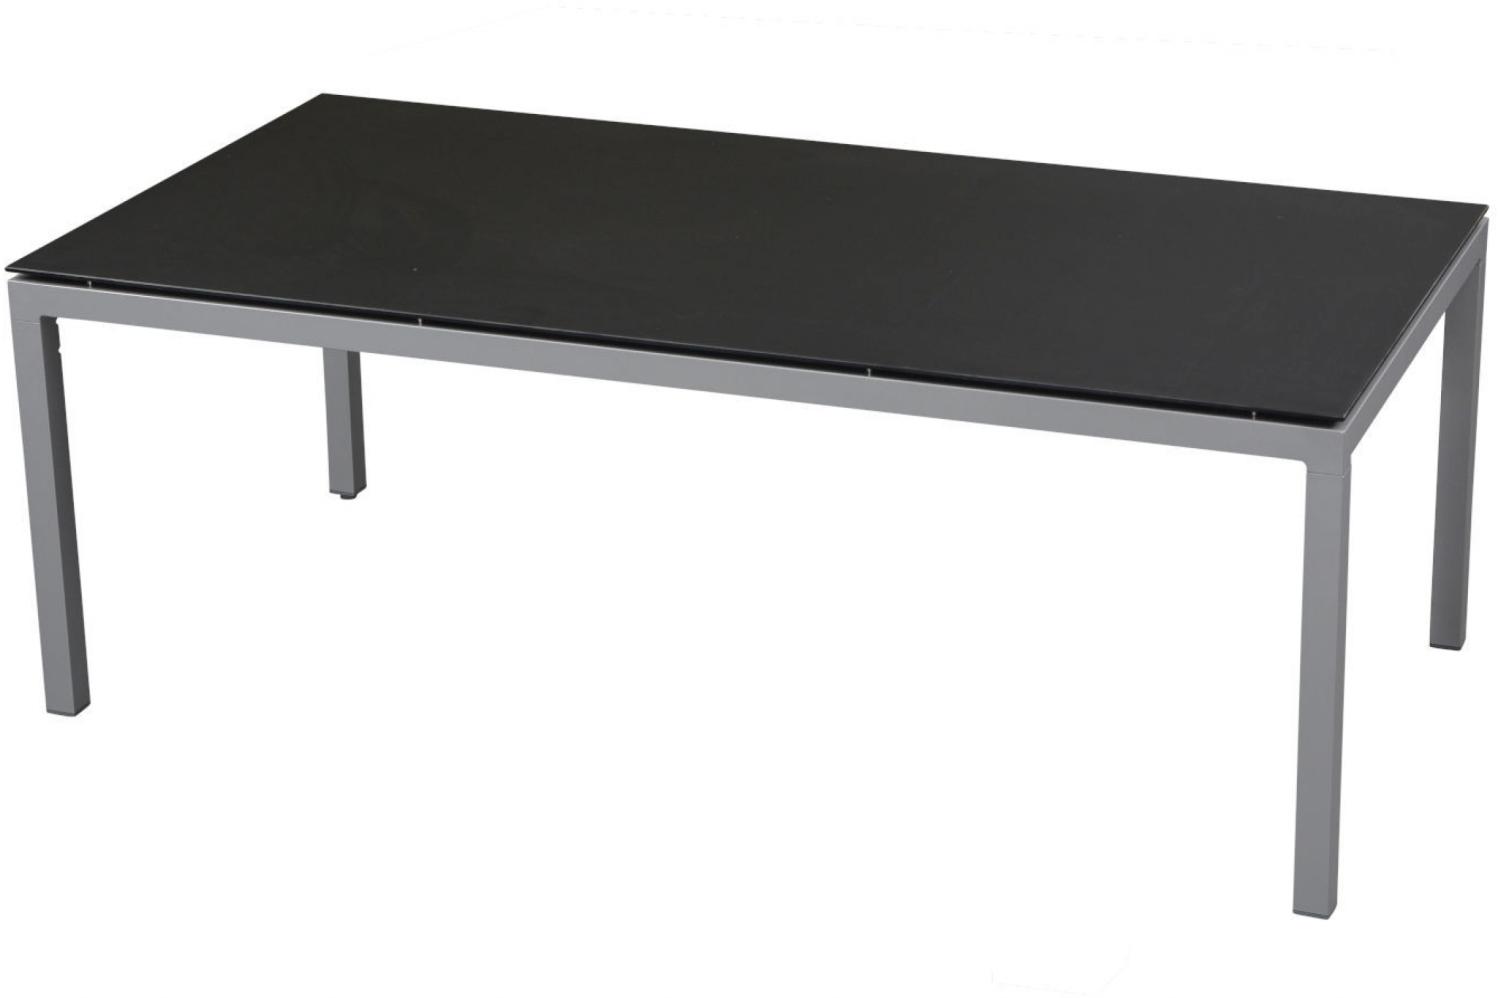 Inko Gartentisch Aluminium silber 160x90 cm Terrassentisch Tischplatte nach Wahl Deropal schwarz Bild 1